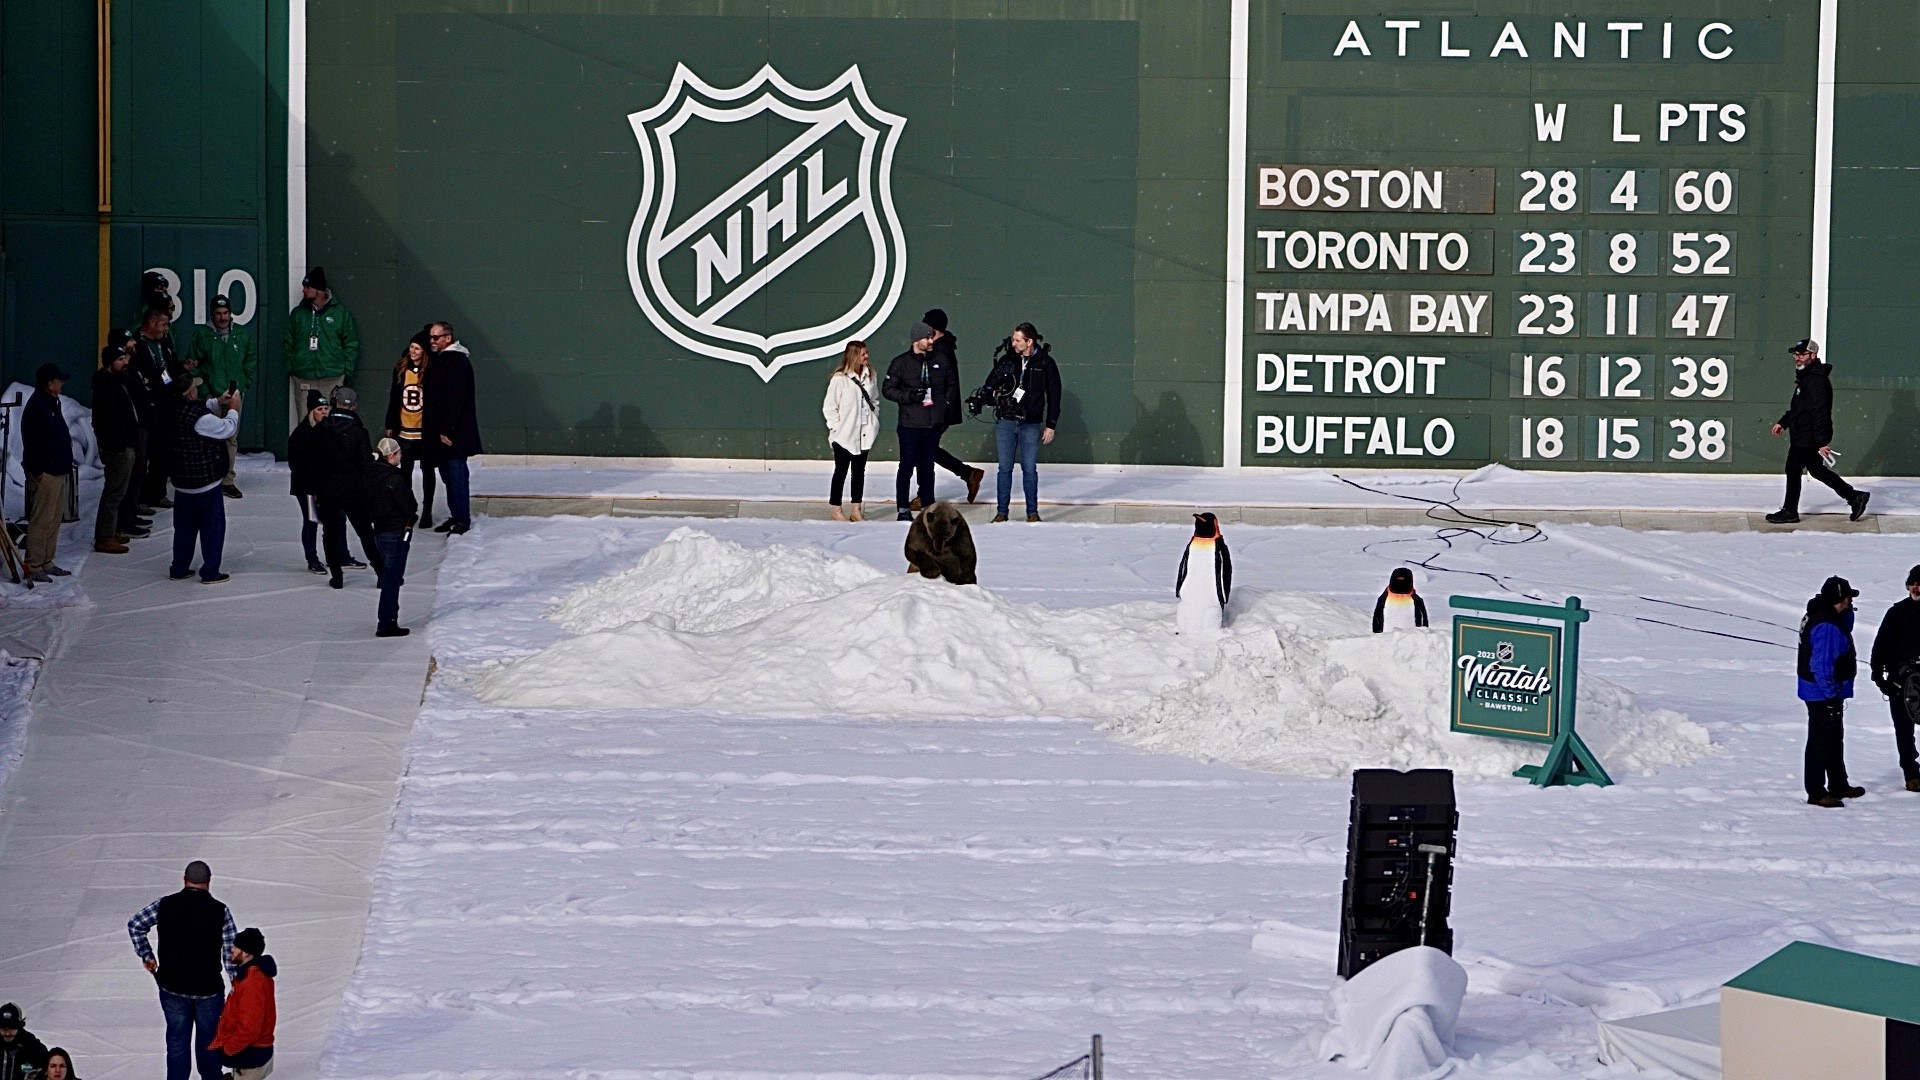 Bruins Win Winter Classic at Fenway Park – NBC Boston